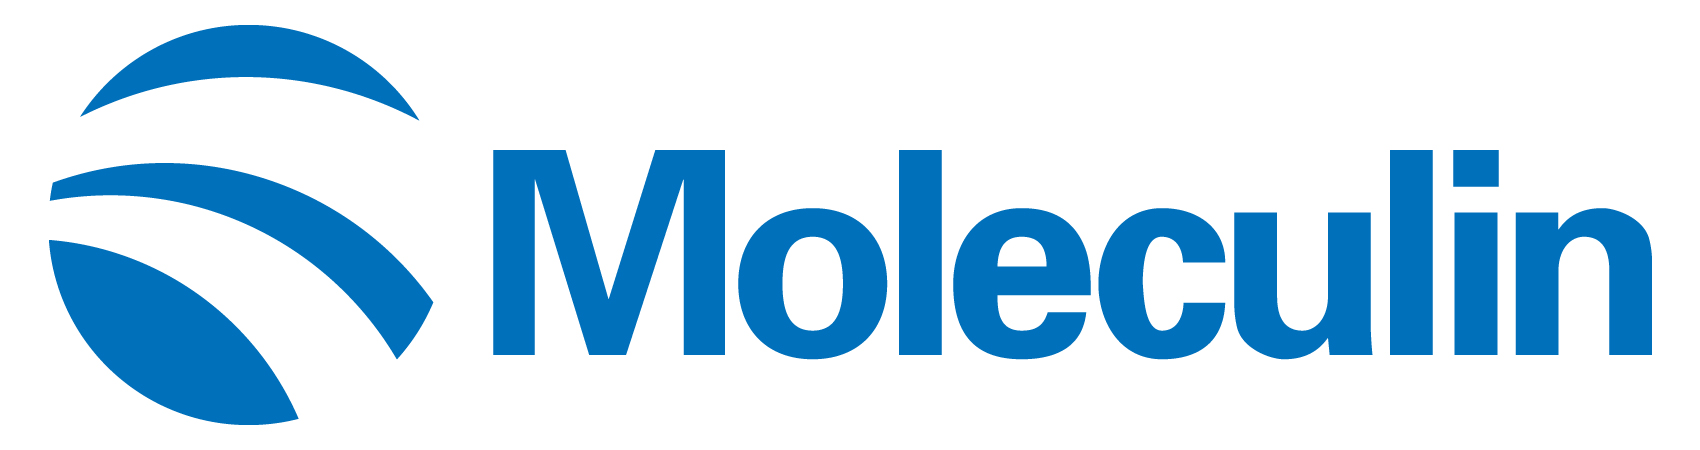 moleculin-logoa01.jpg